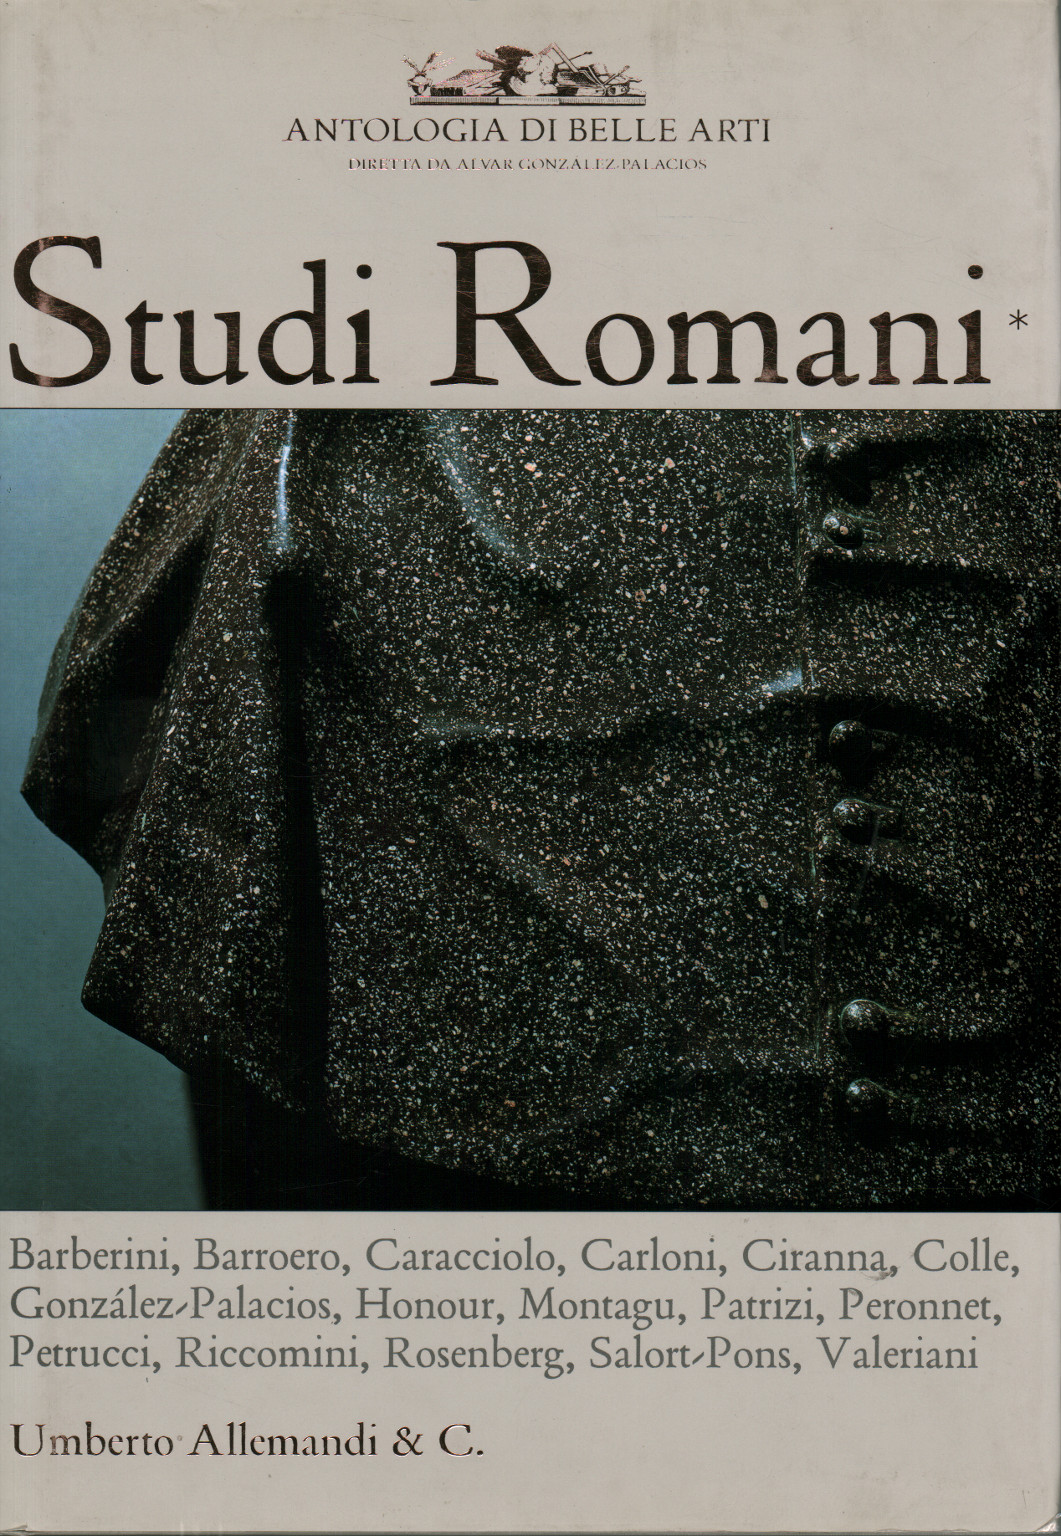 Études romanes, vol. 1, s.un.